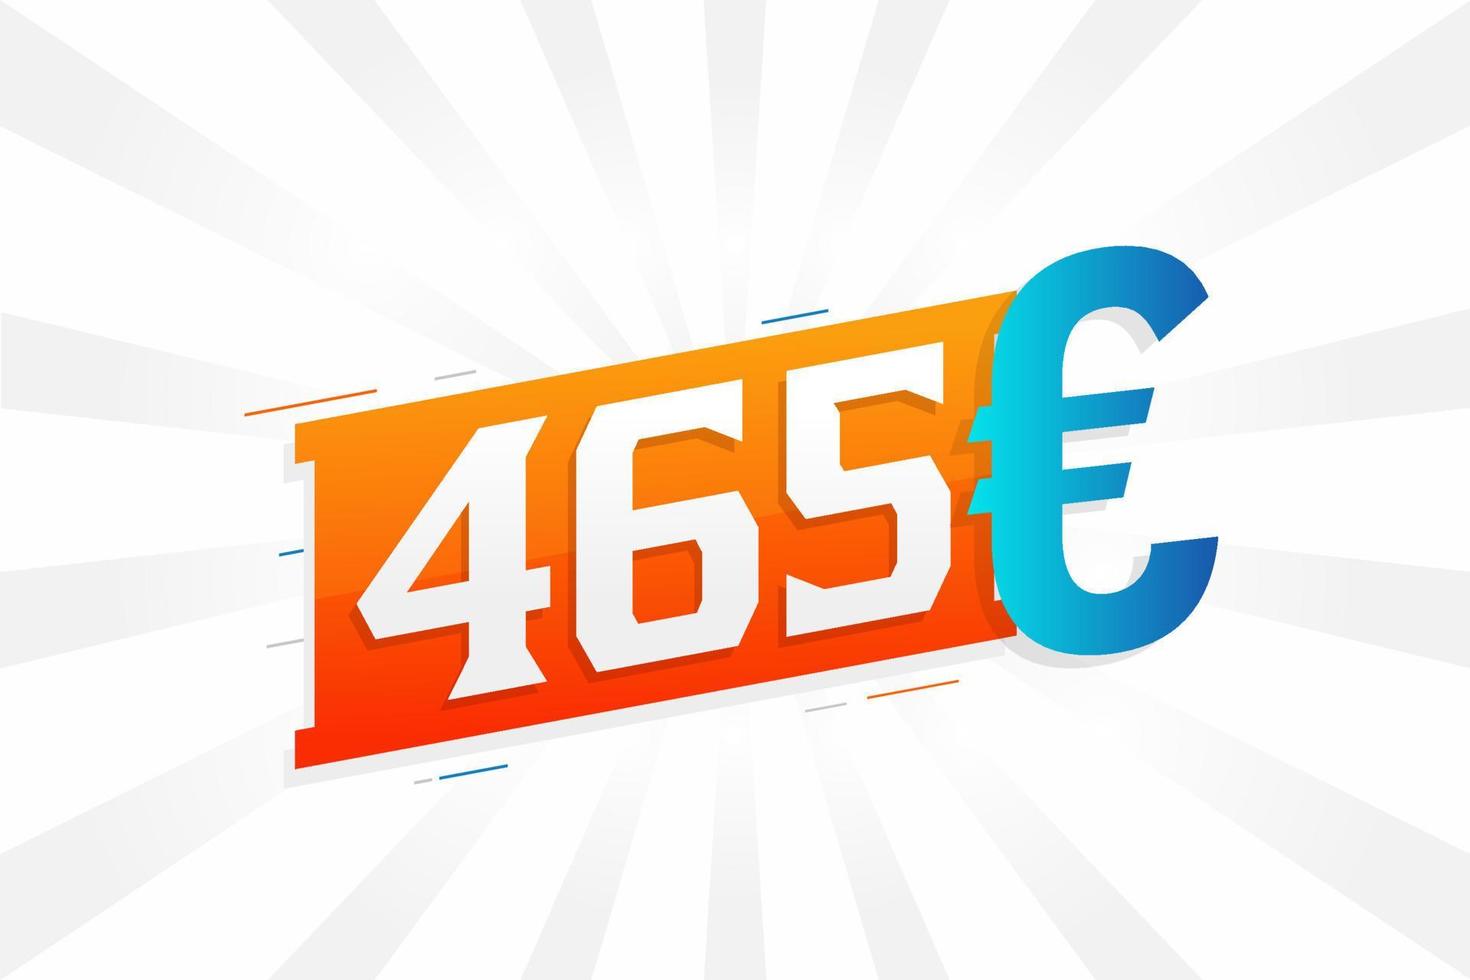 Symbole de texte vectoriel de devise 465 euros. 465 euros vecteur de stock d'argent de l'union européenne